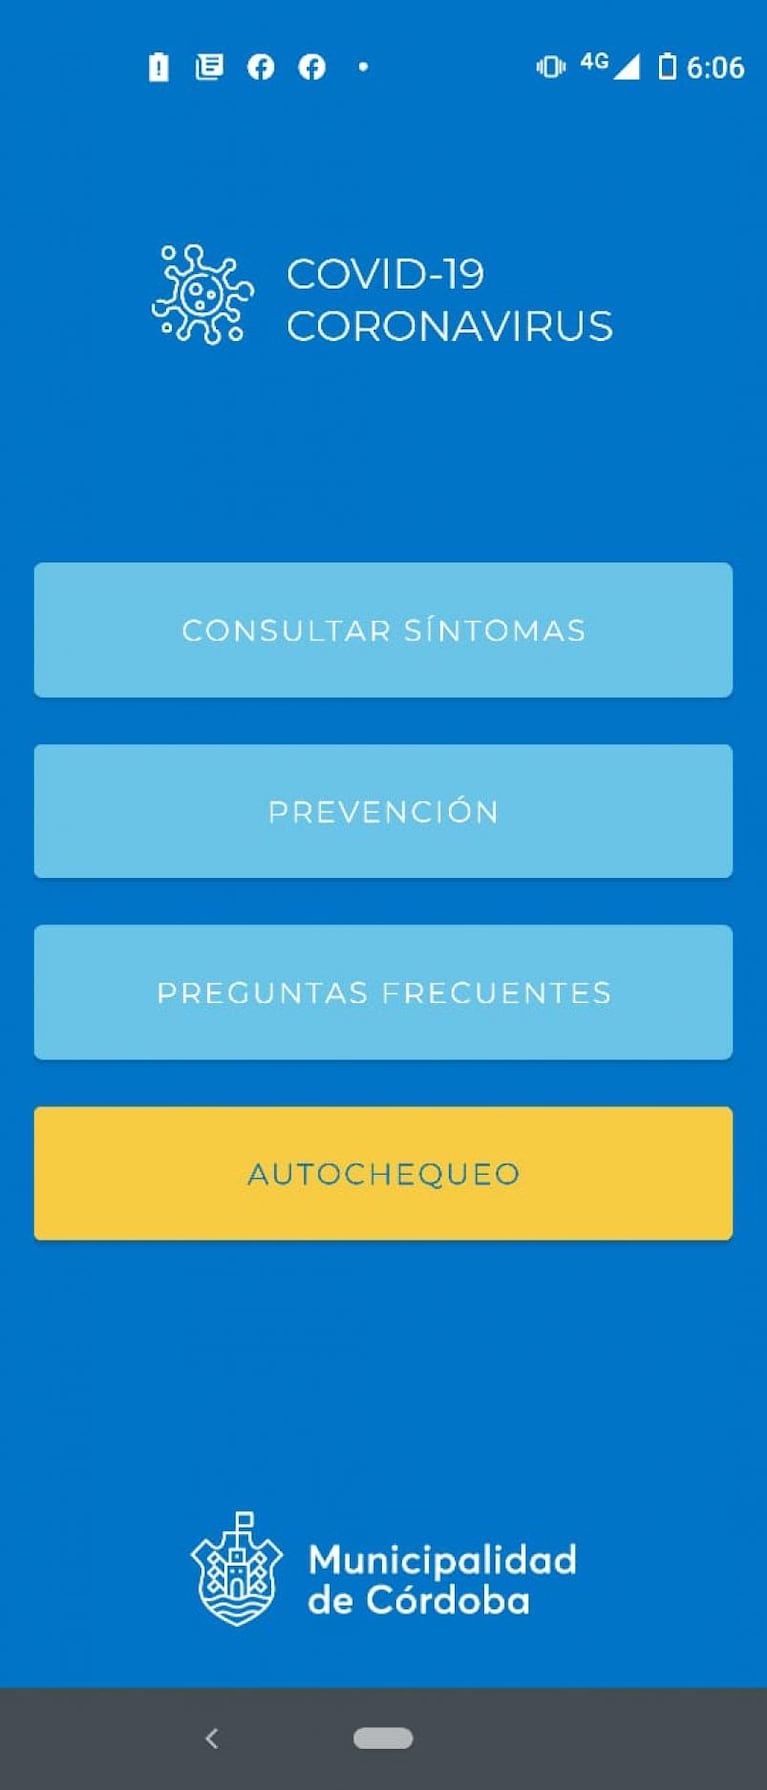 “Vecino salud”, la app cordobesa para el auto-chequeo de síntomas de coronavirus